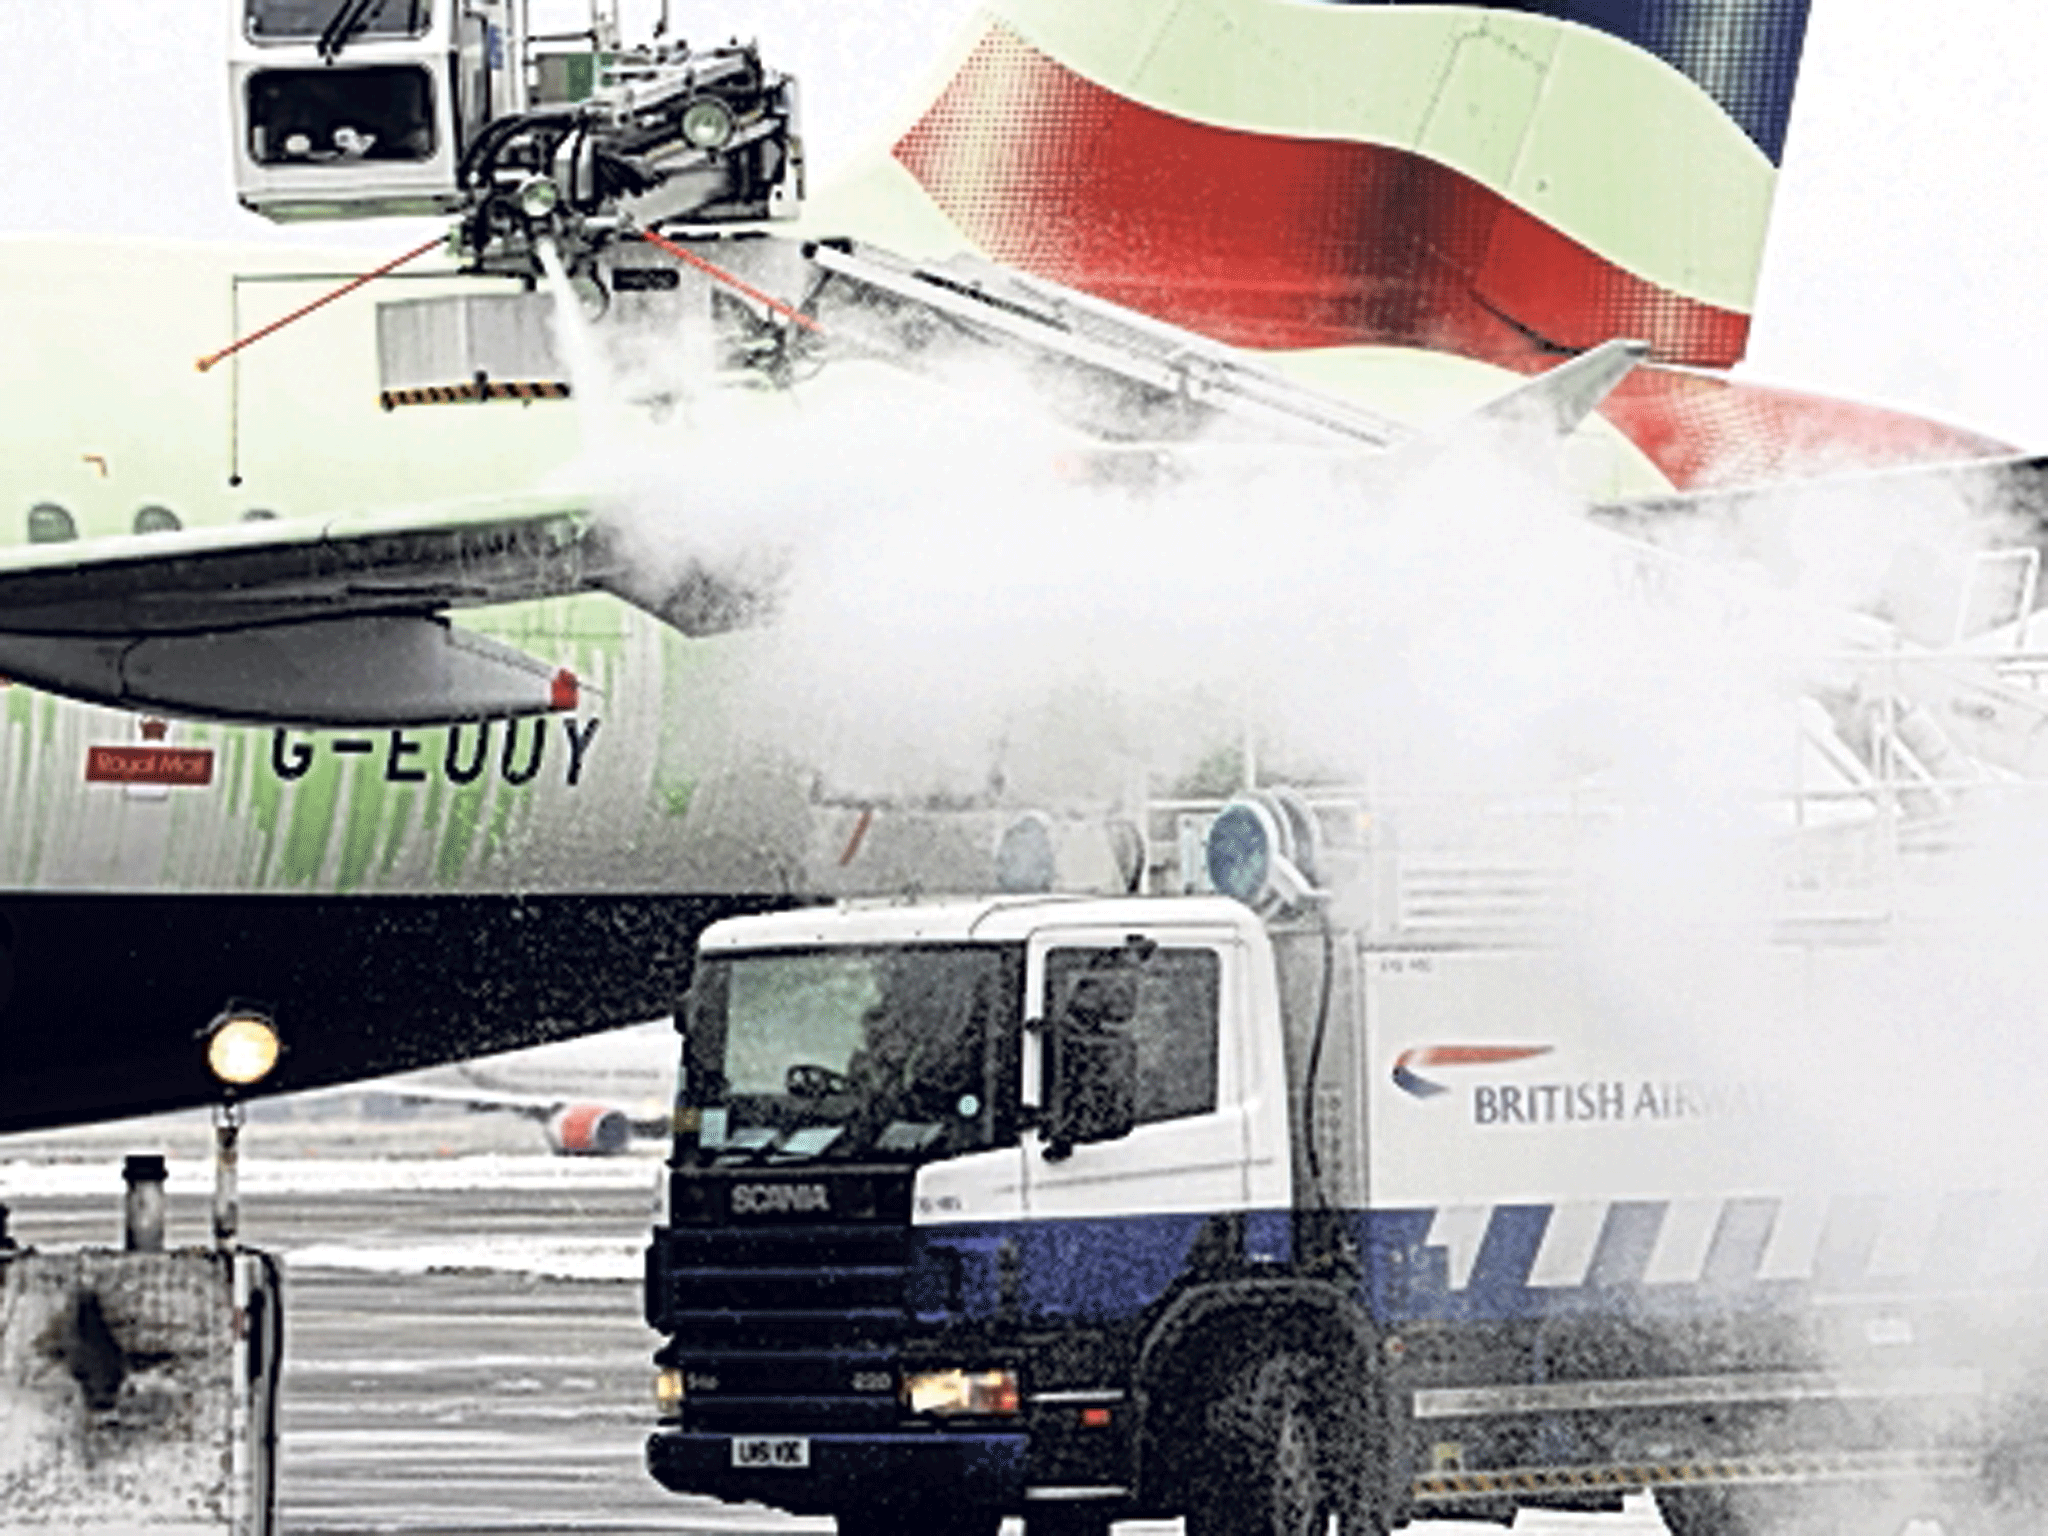 Spray day: de-icing a BA jet at Heathrow